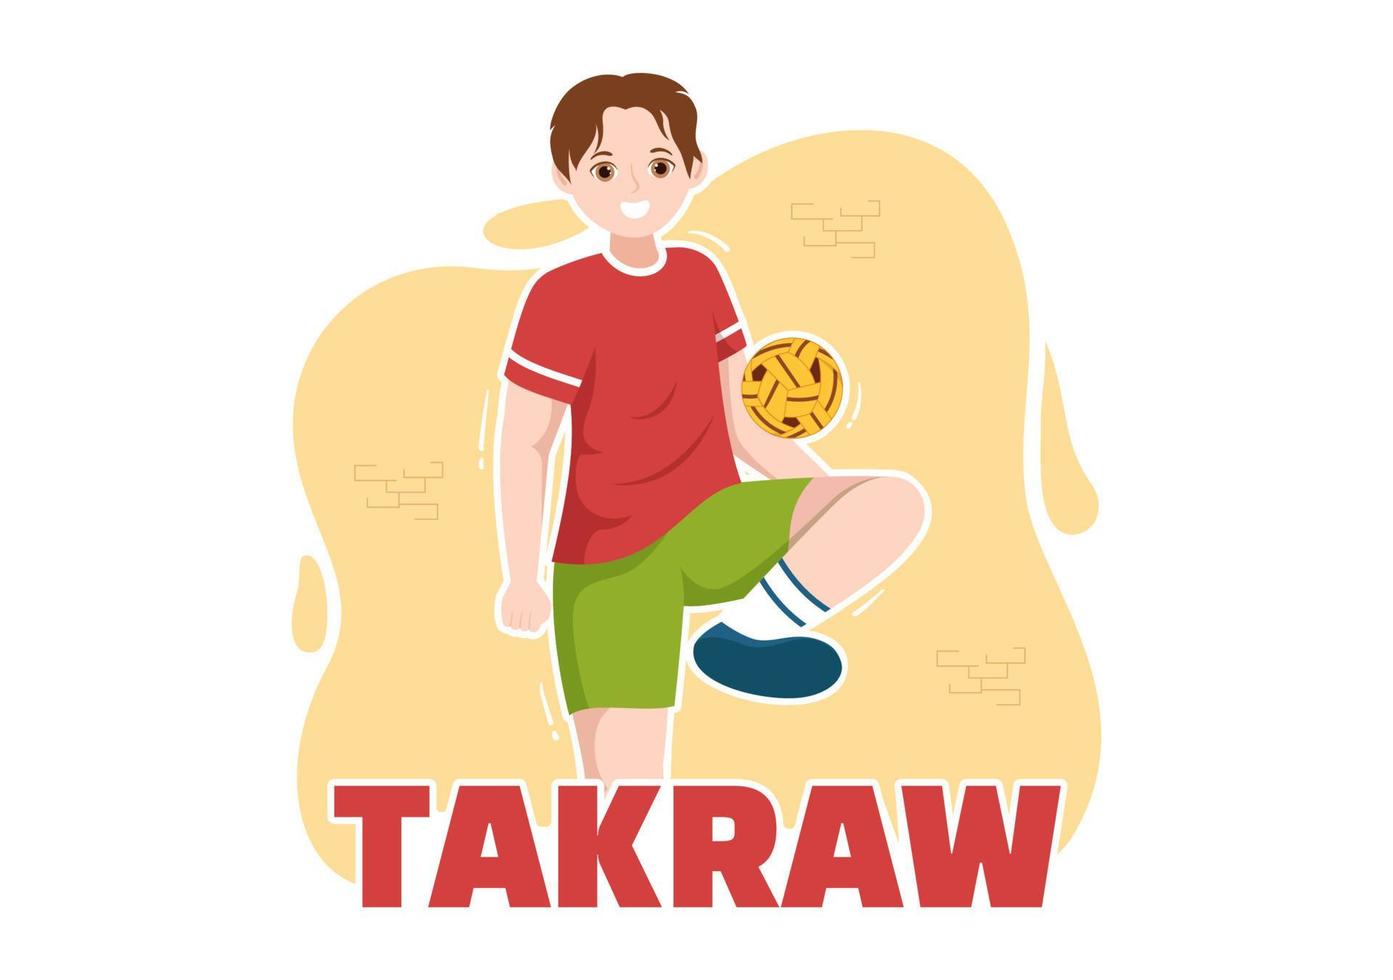 ilustração de sepak takraw com atleta jogando bola na quadra em desenho animado de competição de jogos esportivos planos desenhado à mão para o modelo de página de aterrissagem vetor